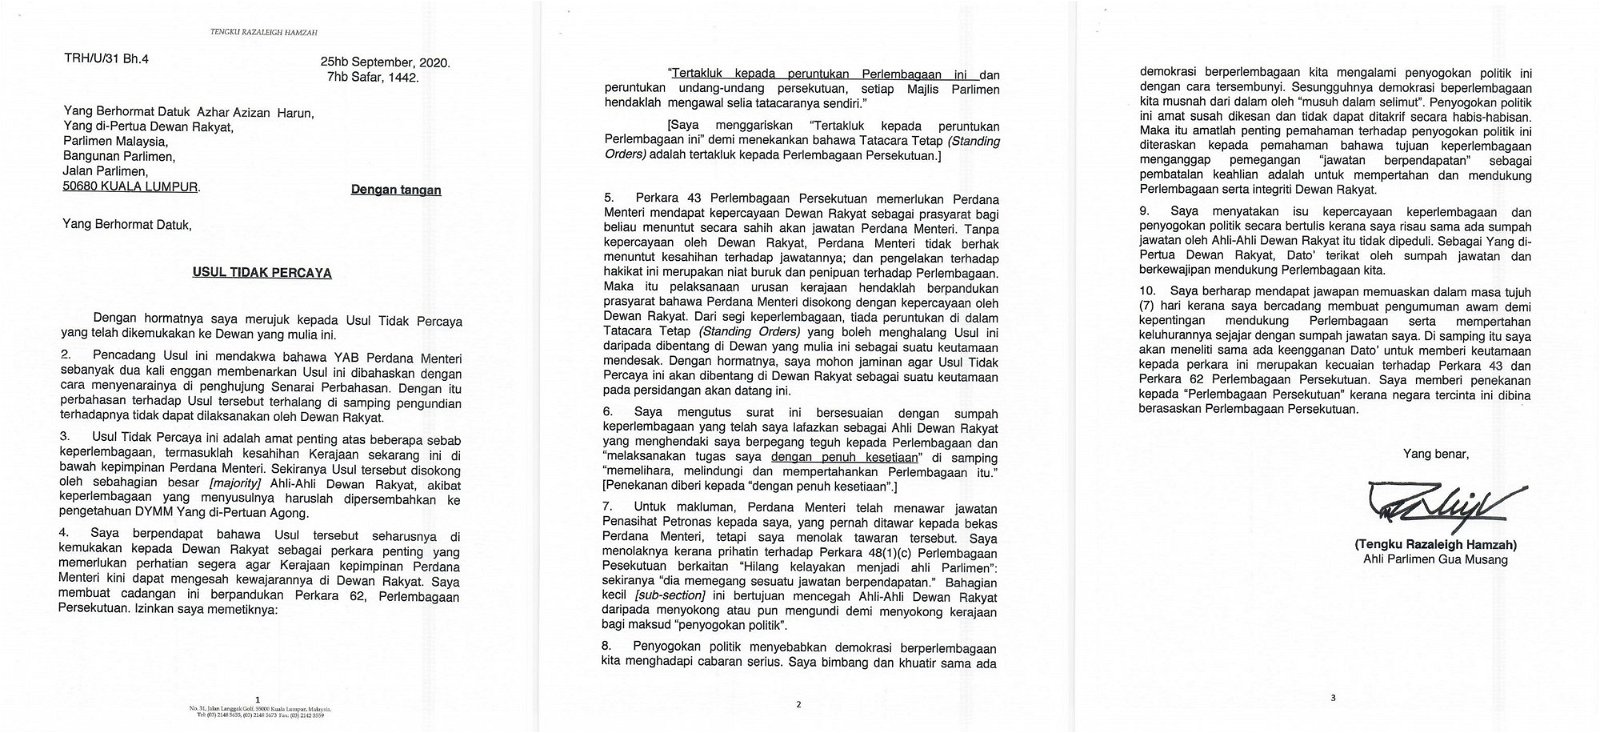 东姑拉沙里在志期9月25日发给议长的信函中，要求允准议会辩论他对首相丹斯里慕尤丁所提出的不信任动议！